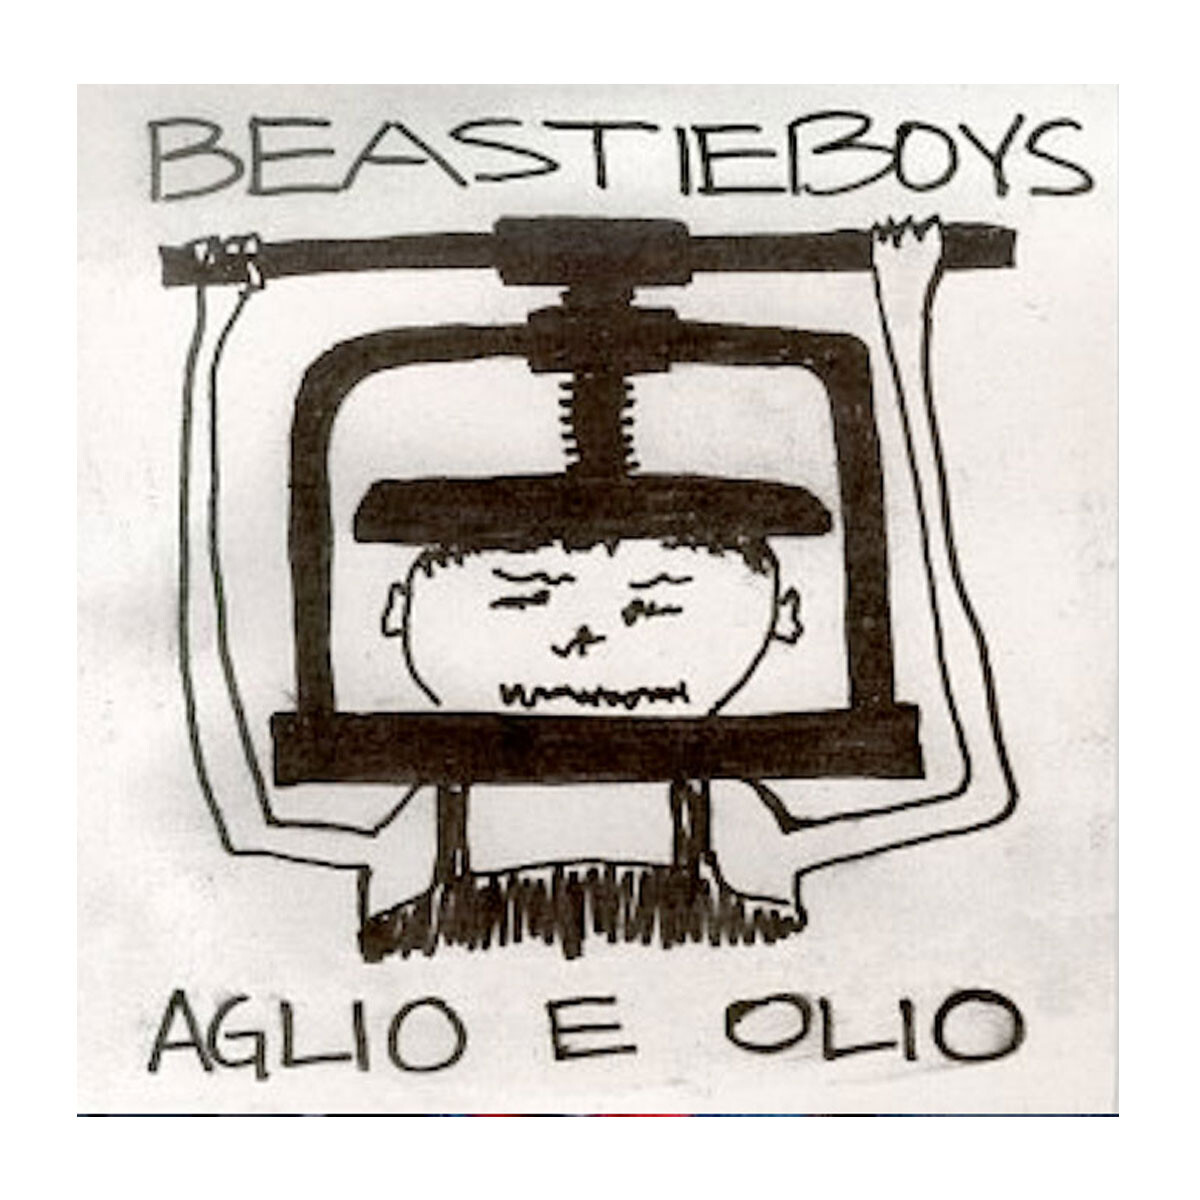 Beastie Boys - Aglio E Ollo - Vinilo 